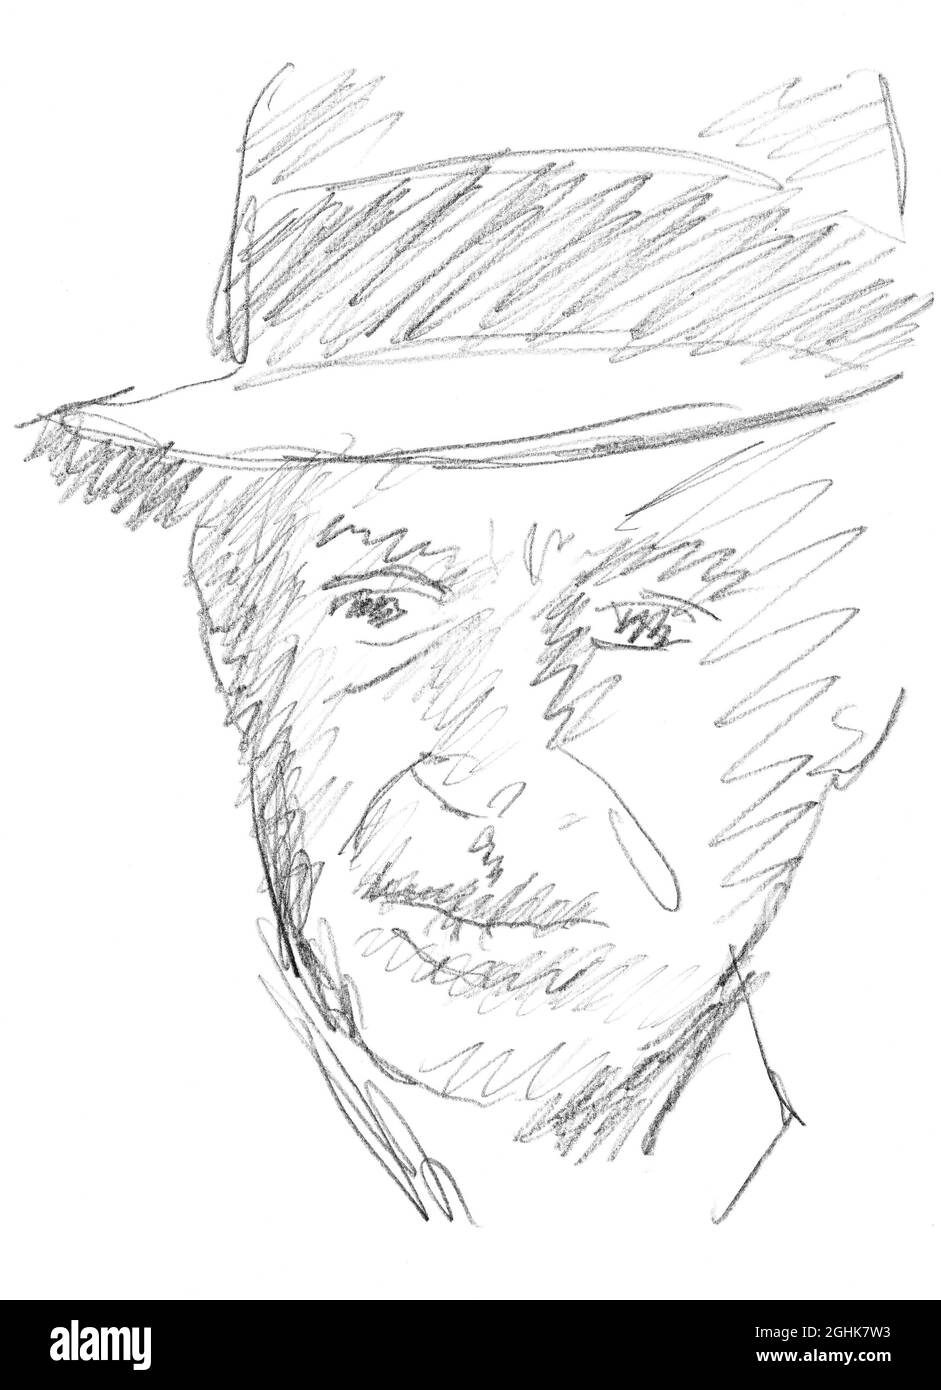 Disegno a matita su ritratto cartaceo dell'attore francese Jean-Paul  Belmondo 1933 - 2021 Foto stock - Alamy